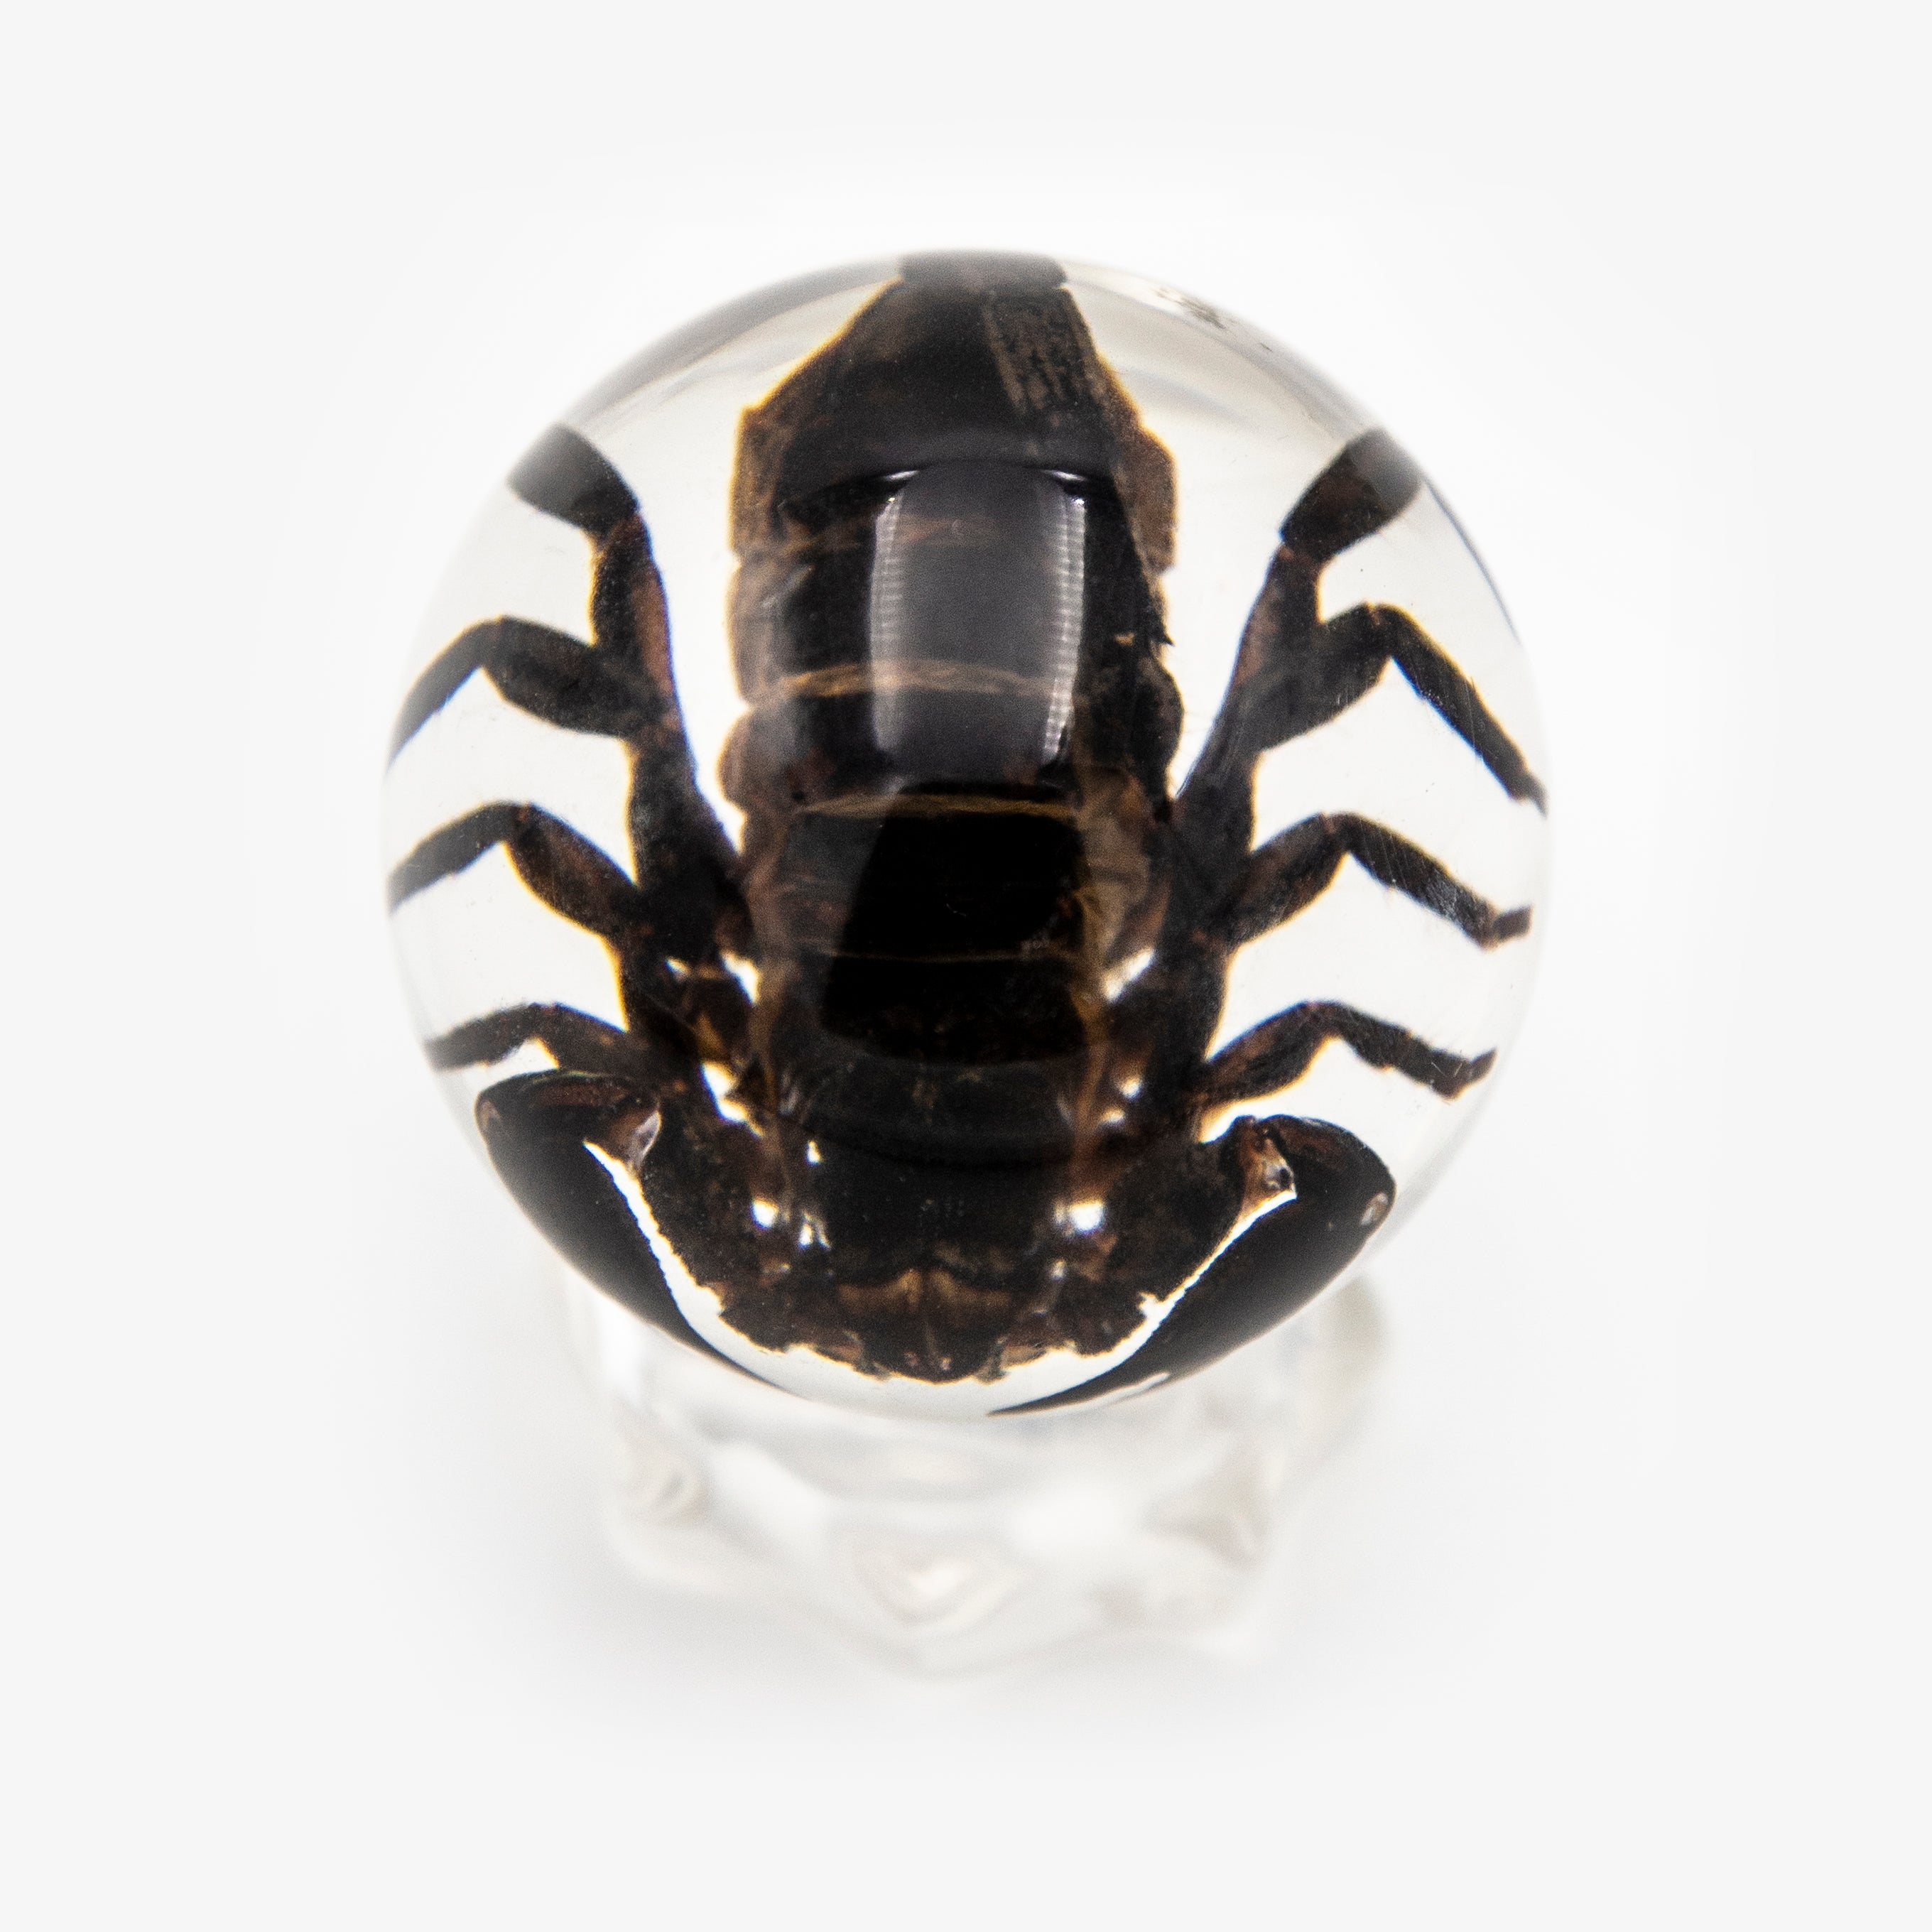 Real Black Scorpion Resin Sphere